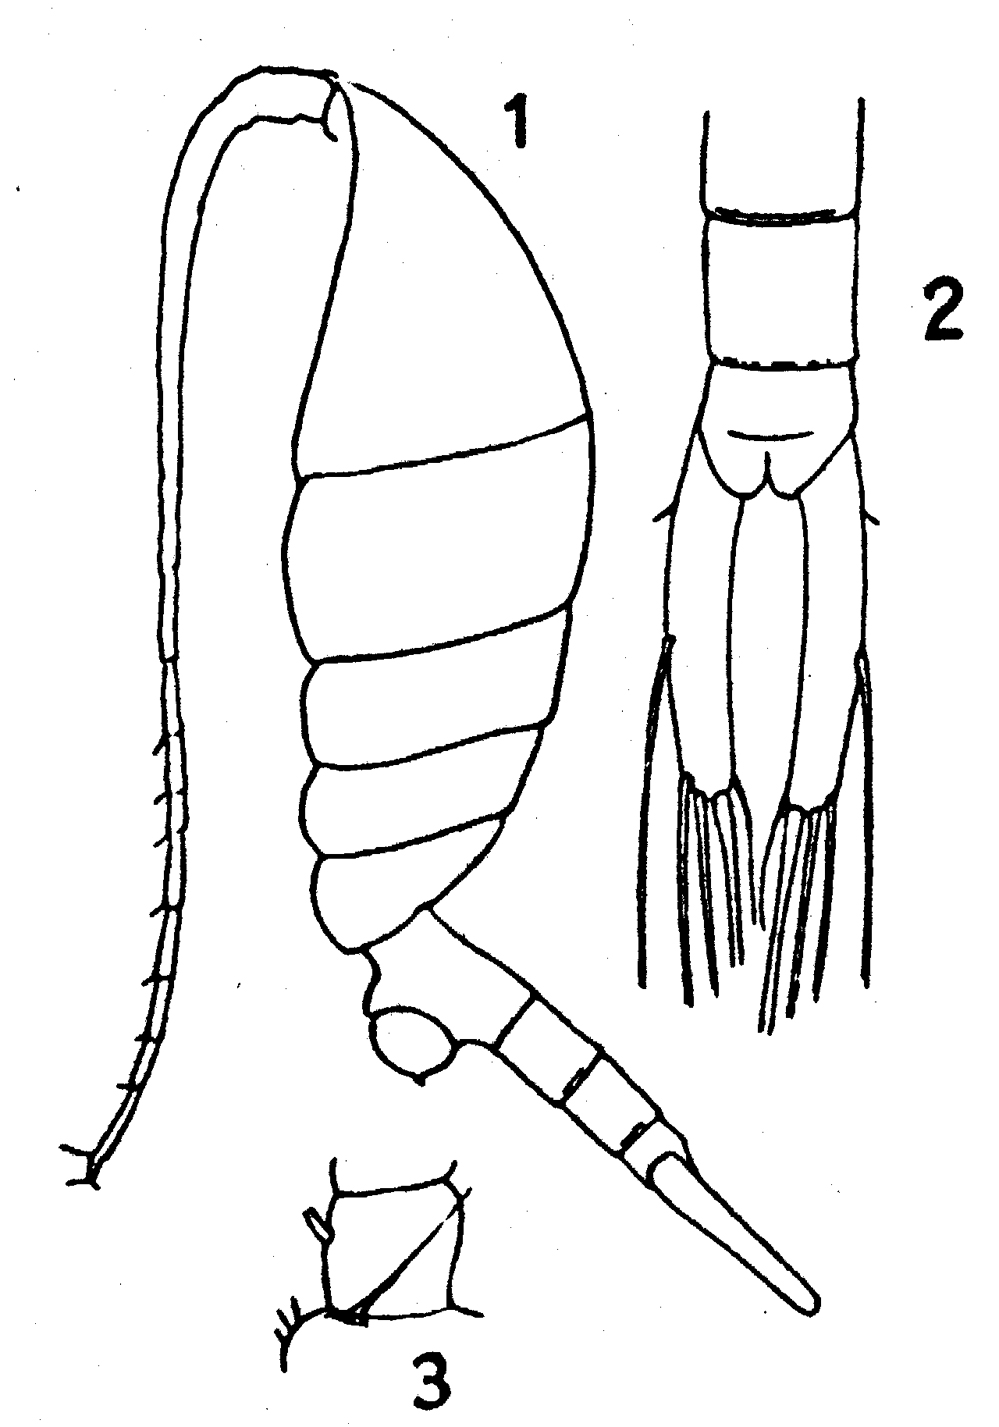 Espce Lucicutia flavicornis - Planche 17 de figures morphologiques